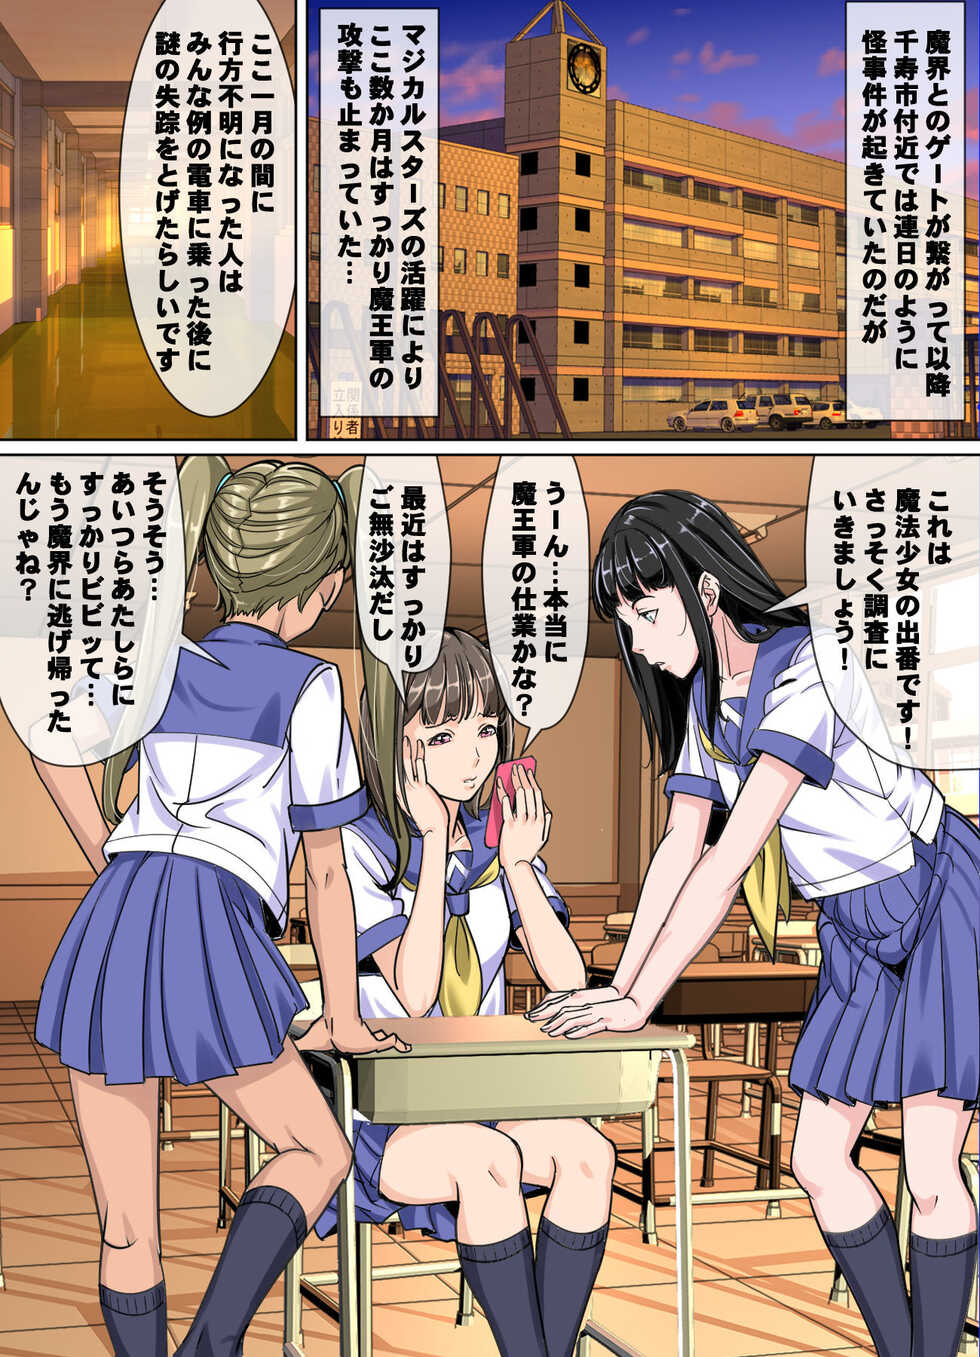 [Retro Star] Comic The Akuochi 3 Mahou Shoujo VS Chikan Maressha - Page 3